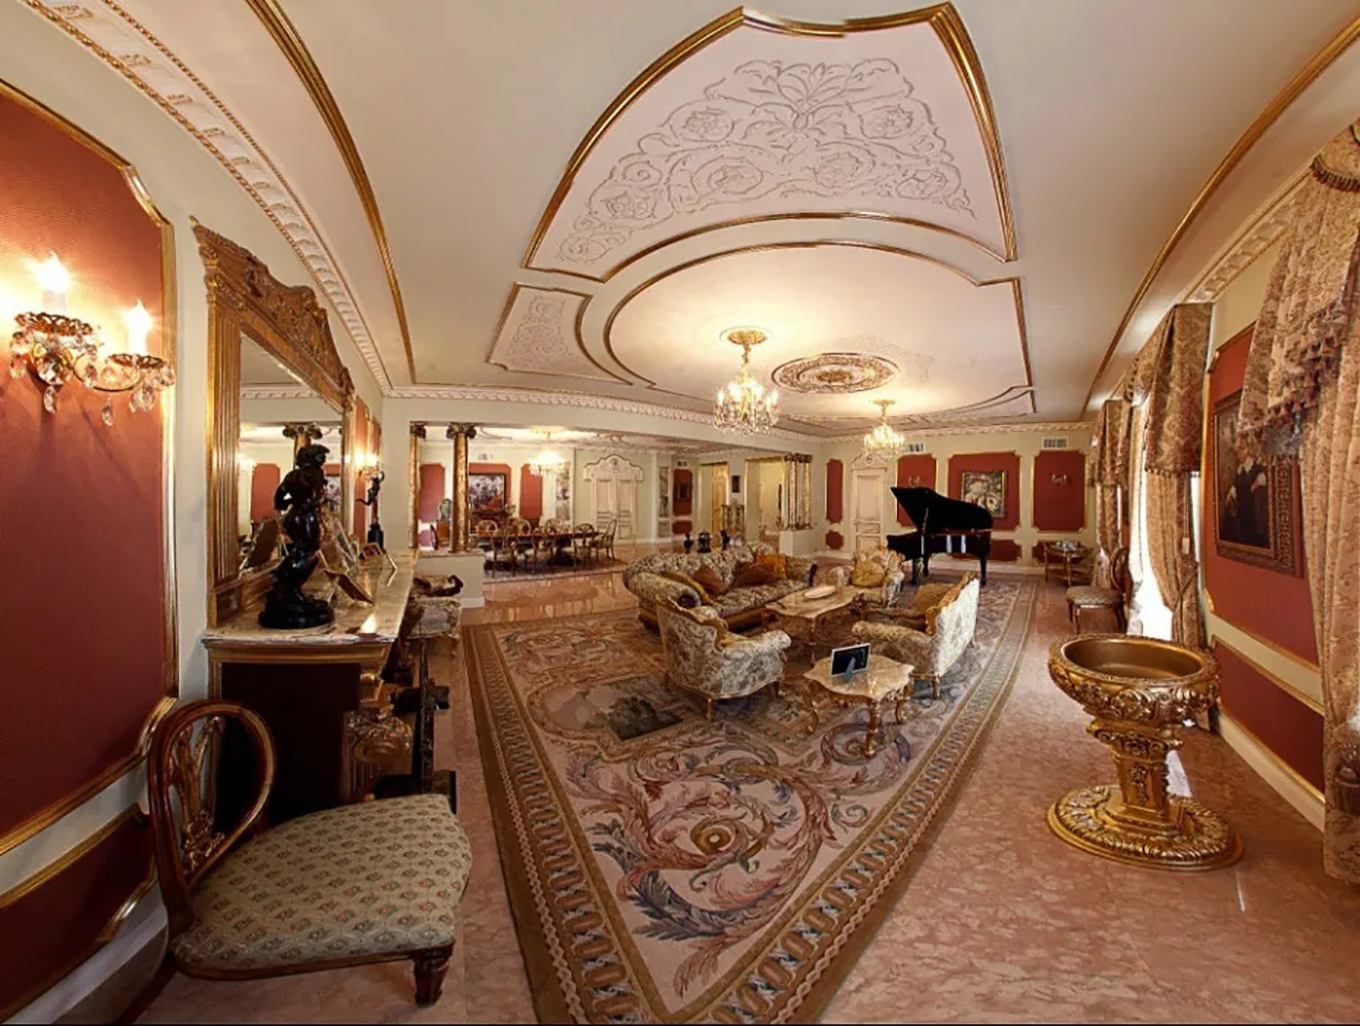 Золото та надмірна розкіш: як виглядає київська квартира за 4,4 мільйона доларів - Нерухомість